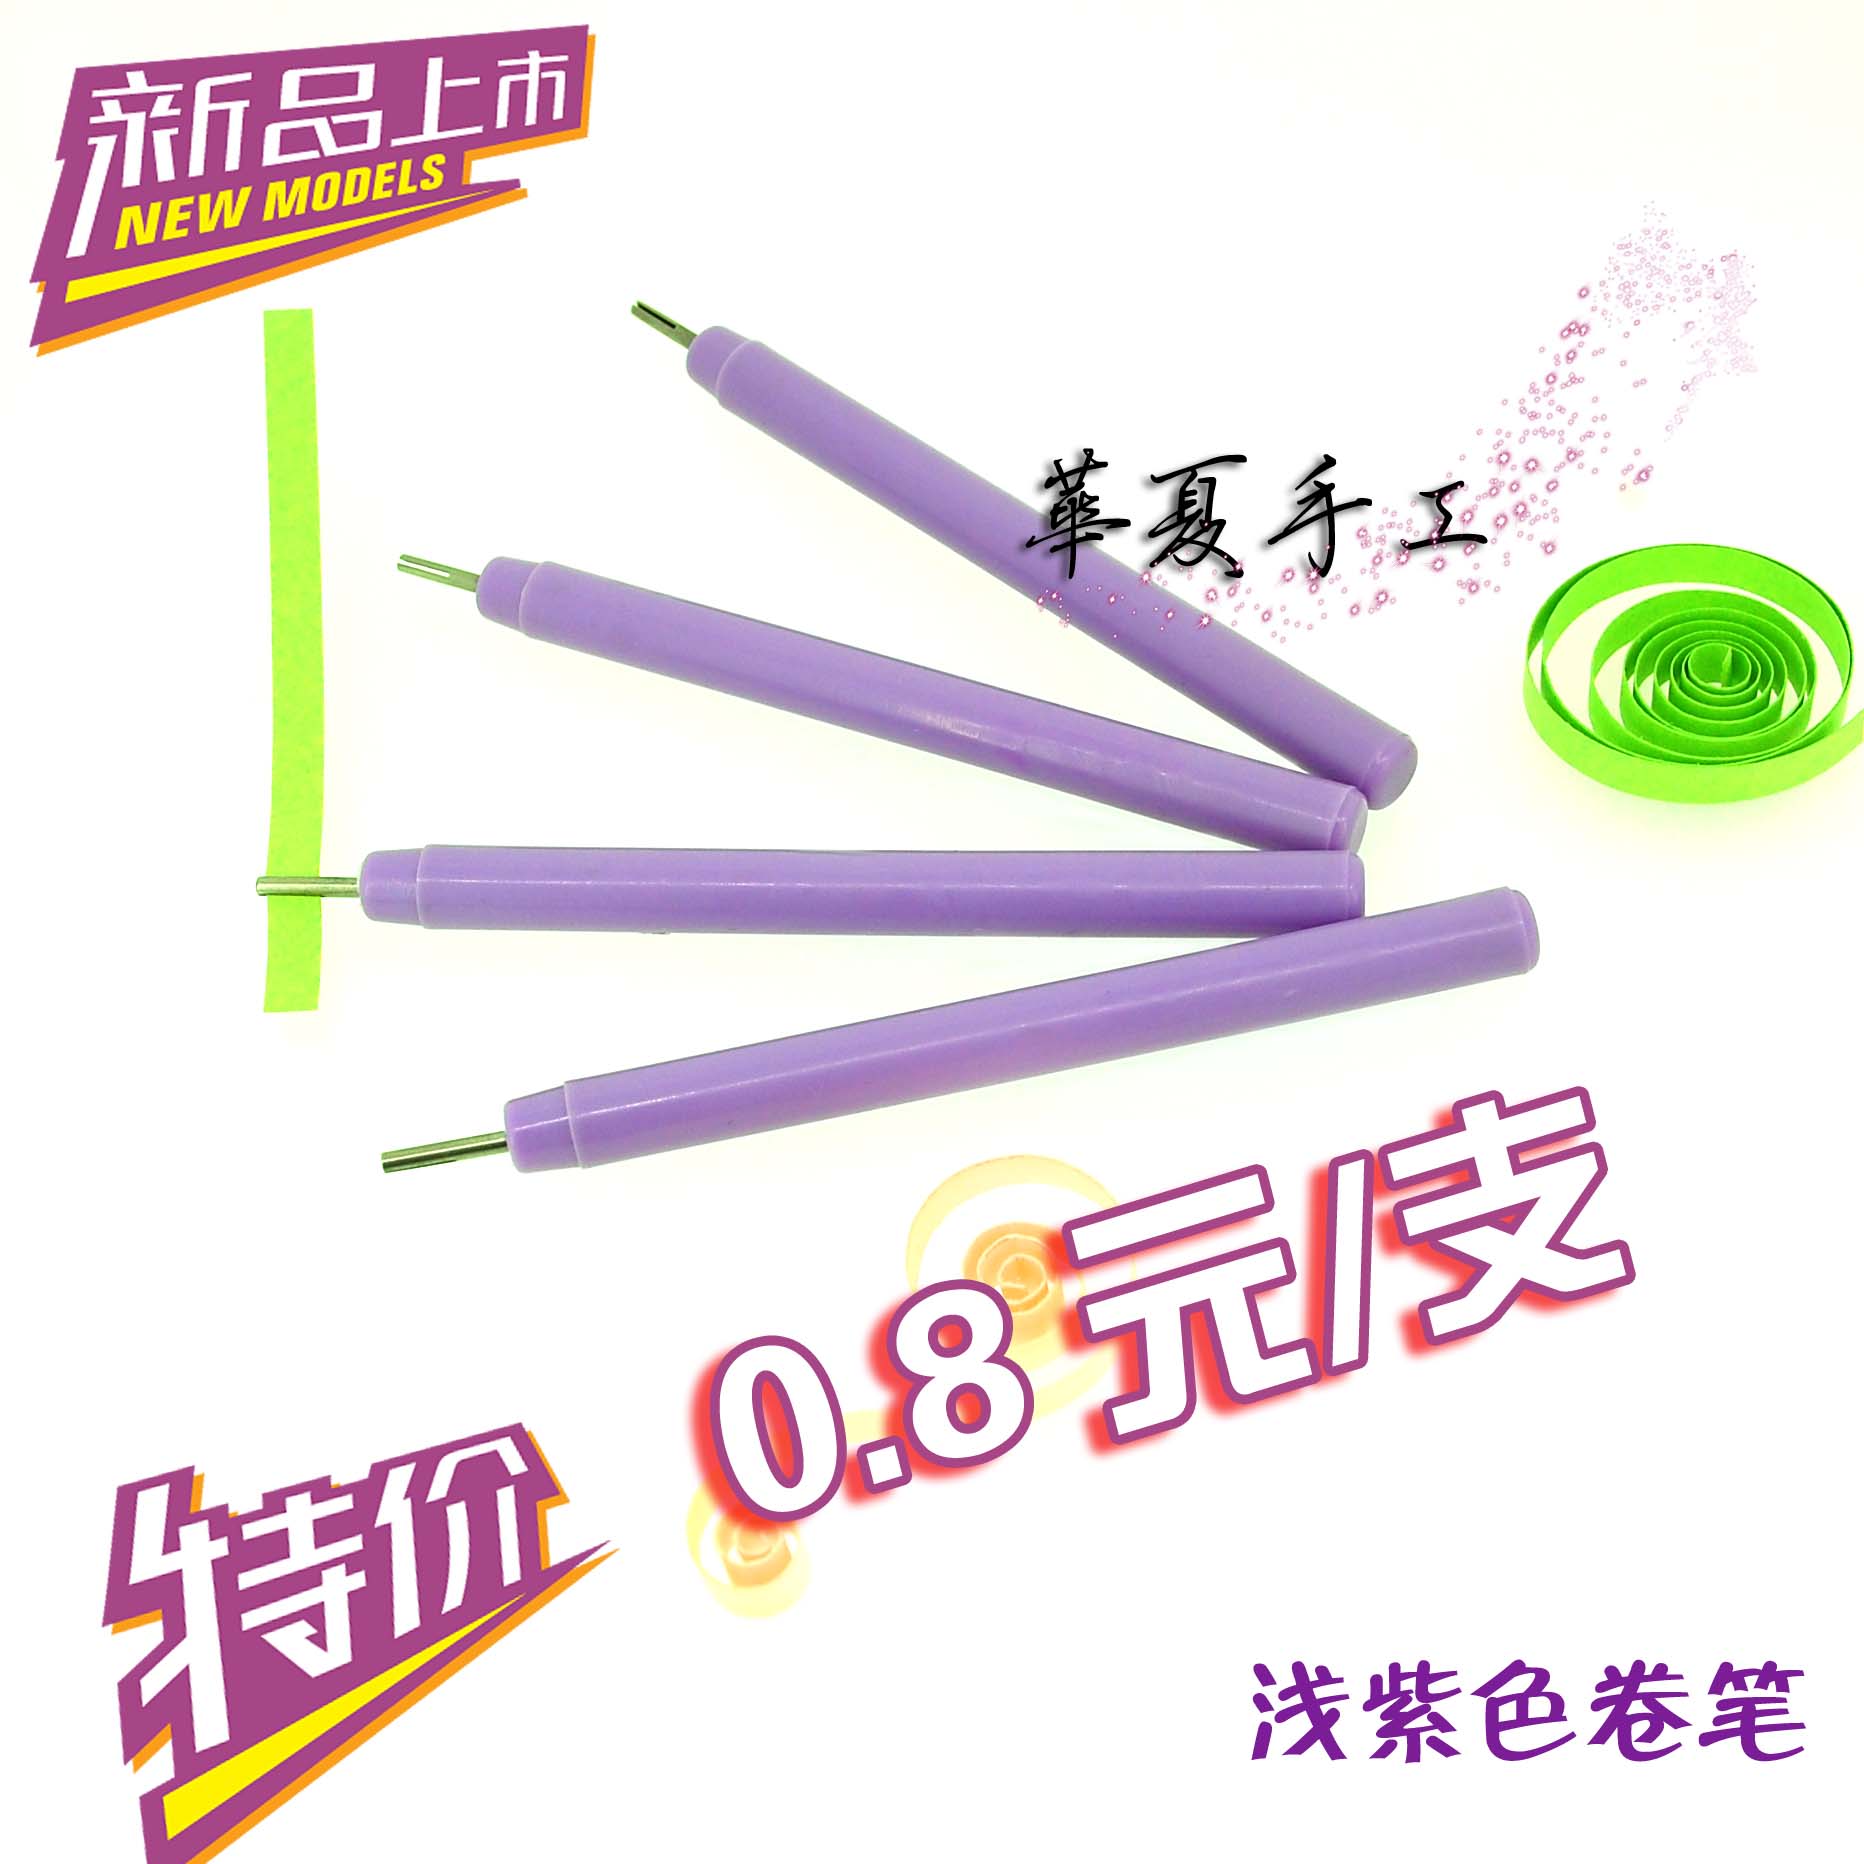 华夏手工 衍纸工具 卷笔 衍纸卷笔器 卷纸工具 学生款淡紫色卷笔